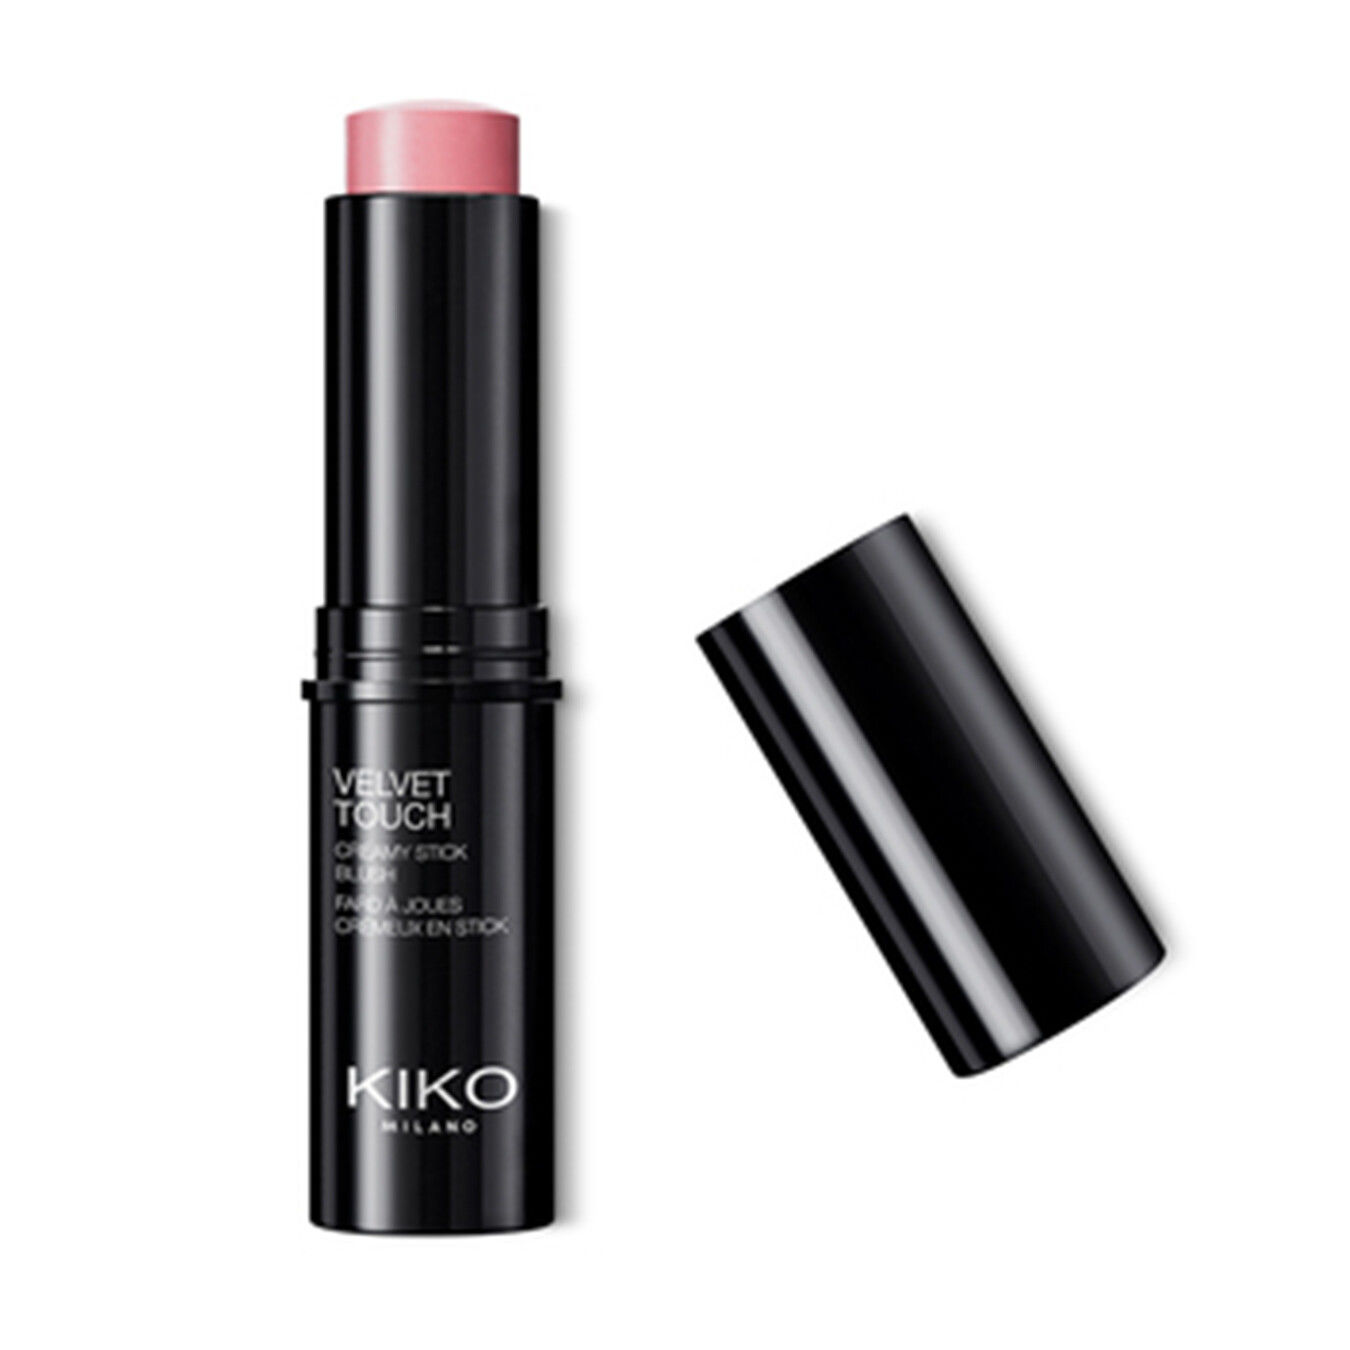 KIKO MILANO Velvet Touch Creamy Stick Blush Stick Blush 1ST von Kiko Milano